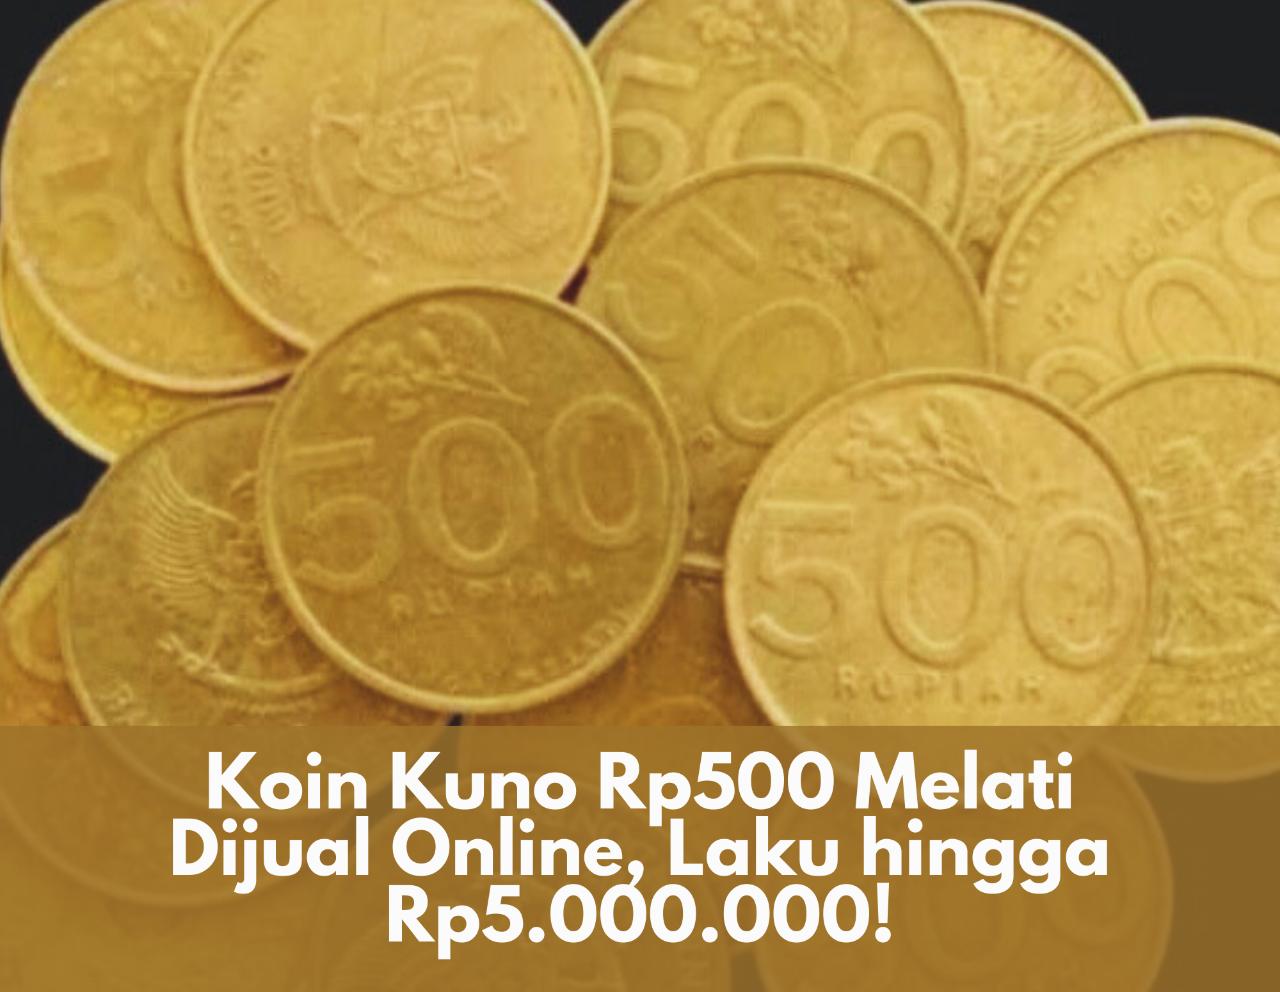 Menarik! Koin Kuno Rp500 Melati Dijual Secara Online, Laku hingga Rp5.000.000, Cek di Sini Cara Jualnya